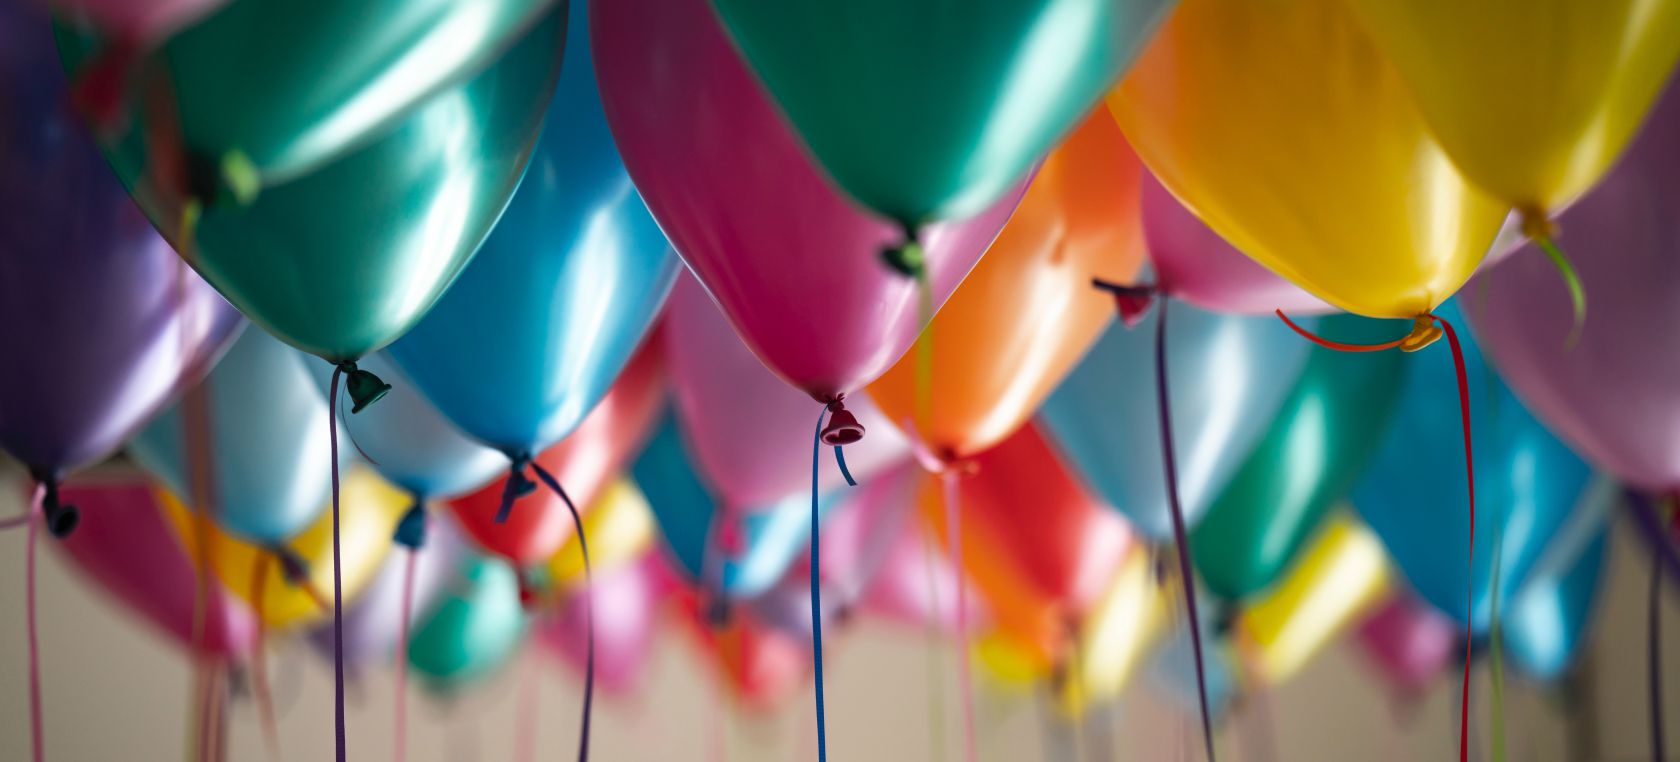 66 ideas para crear tus felicitaciones de cumpleaños